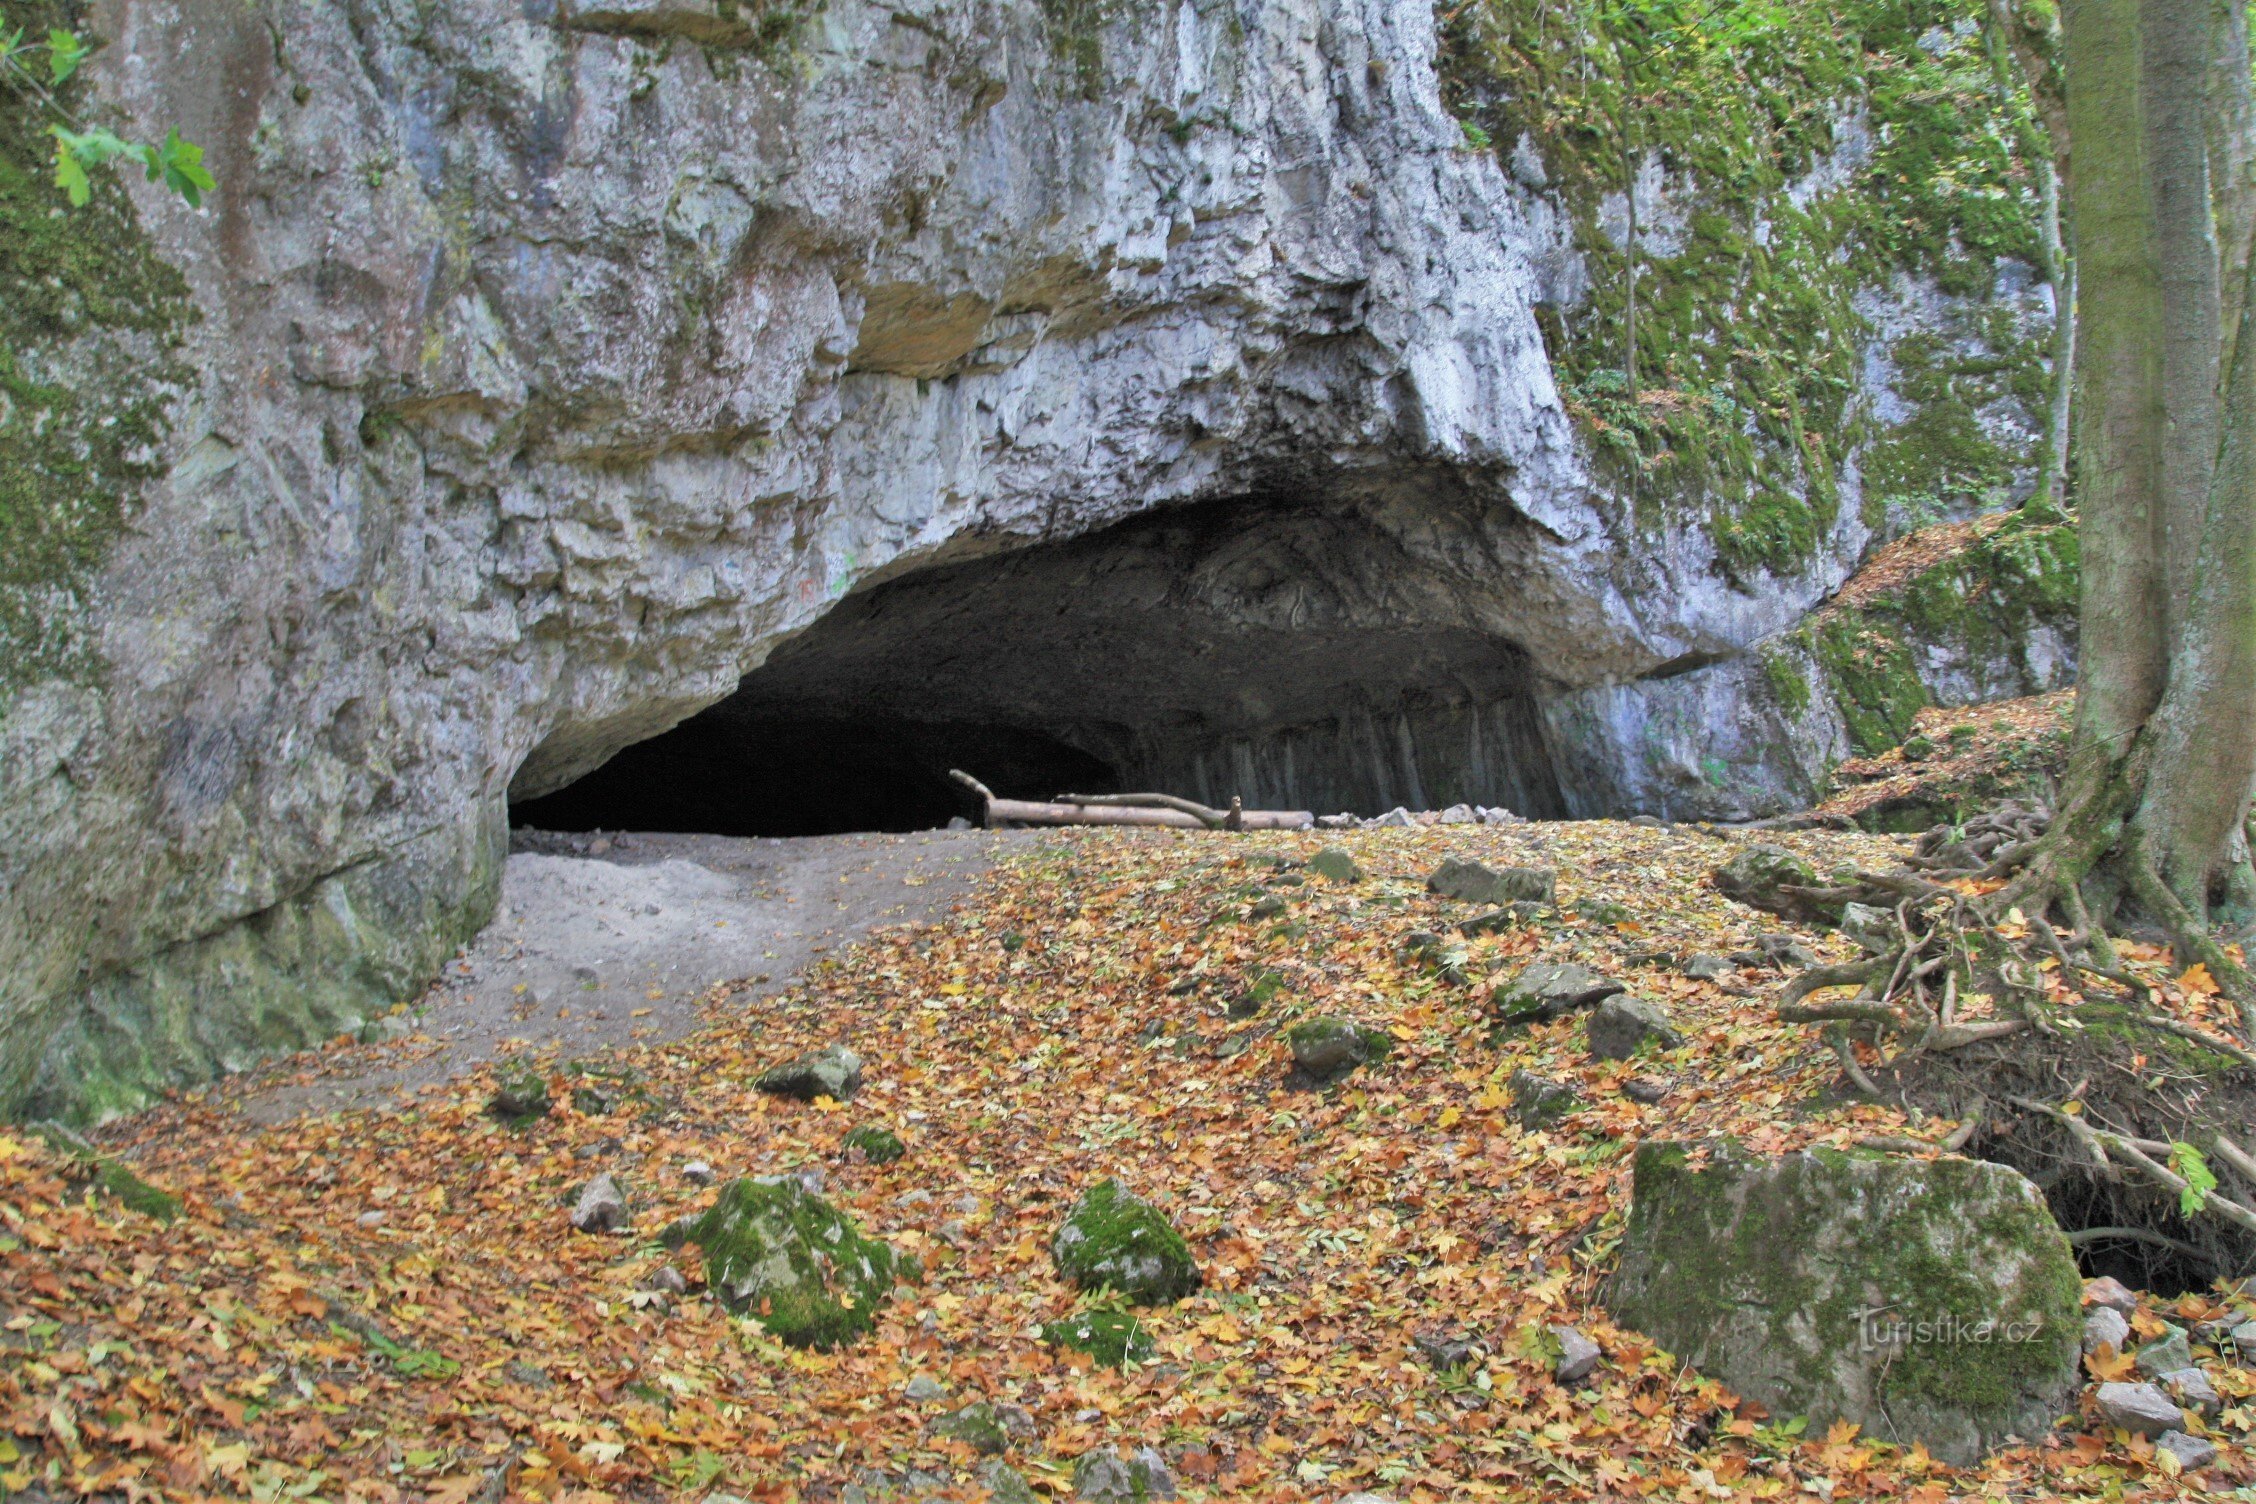 Cunoscuta peșteră Pekárna este, de asemenea, situată pe versant în partea carstică a pârâului